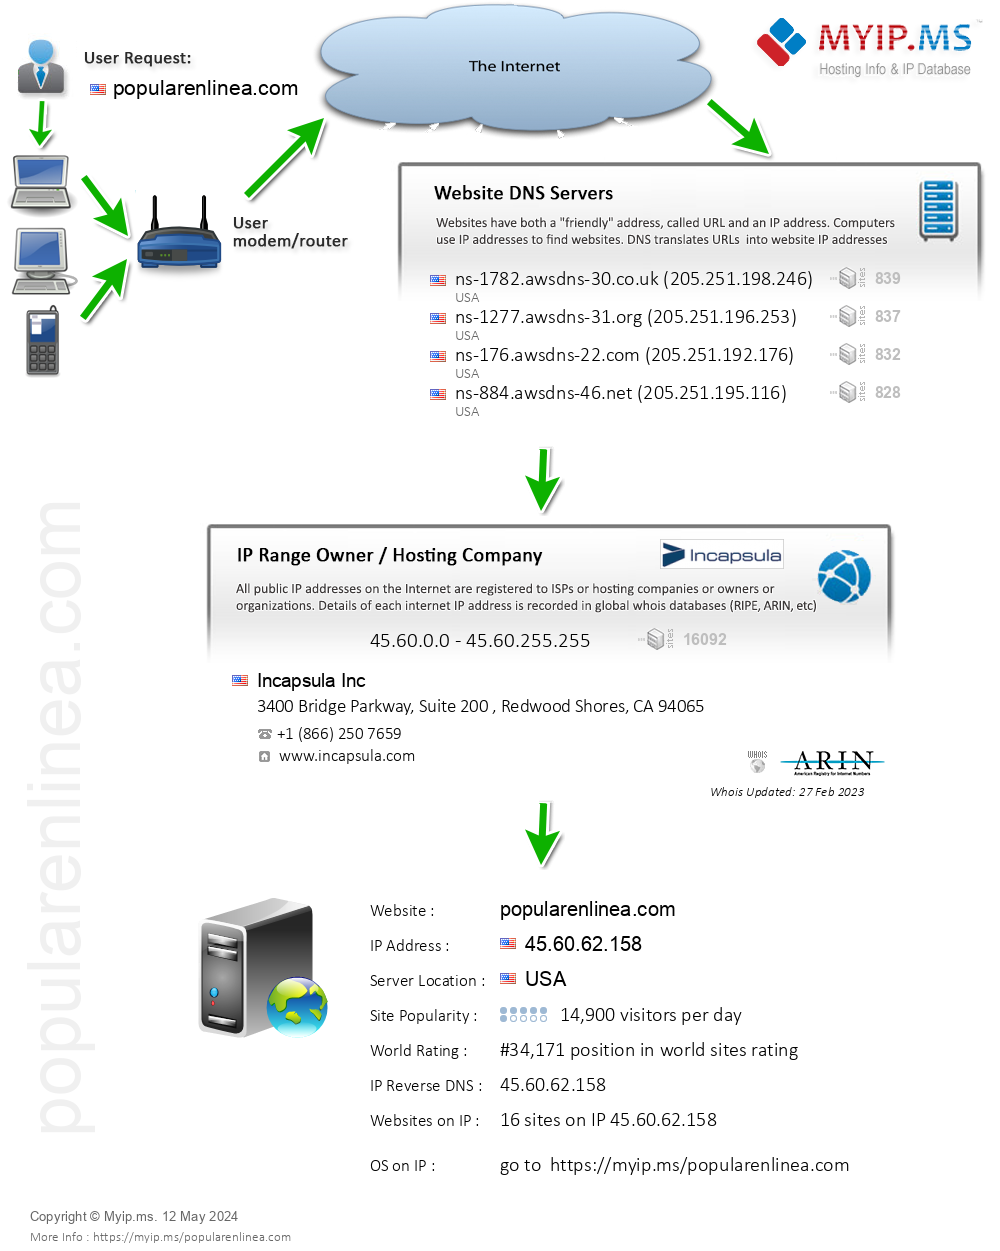 Popularenlinea.com - Website Hosting Visual IP Diagram